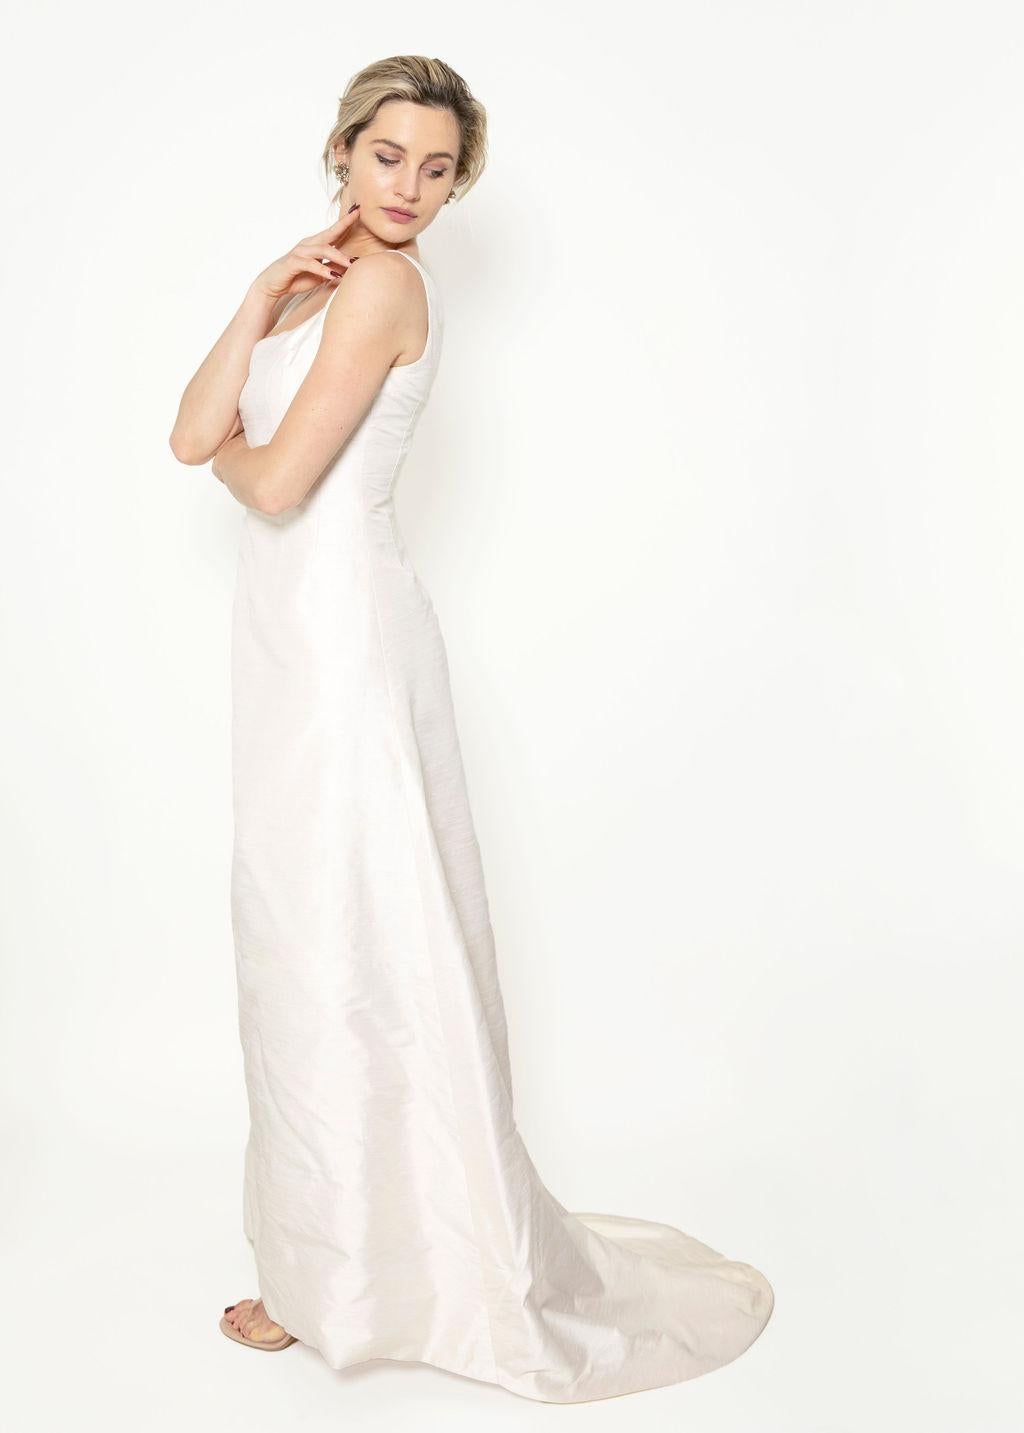 Schreiten Sie mit dem weißen Kleid mit Schleppe von Jane Marquis im Stil der 1960er Jahre mit raffinierter Eleganz zum Traualtar. Dieses Brautkleid mit klassischer Linienführung und 1-Zoll-Trägern hat eine anmutige Schleppe und einen Reißverschluss